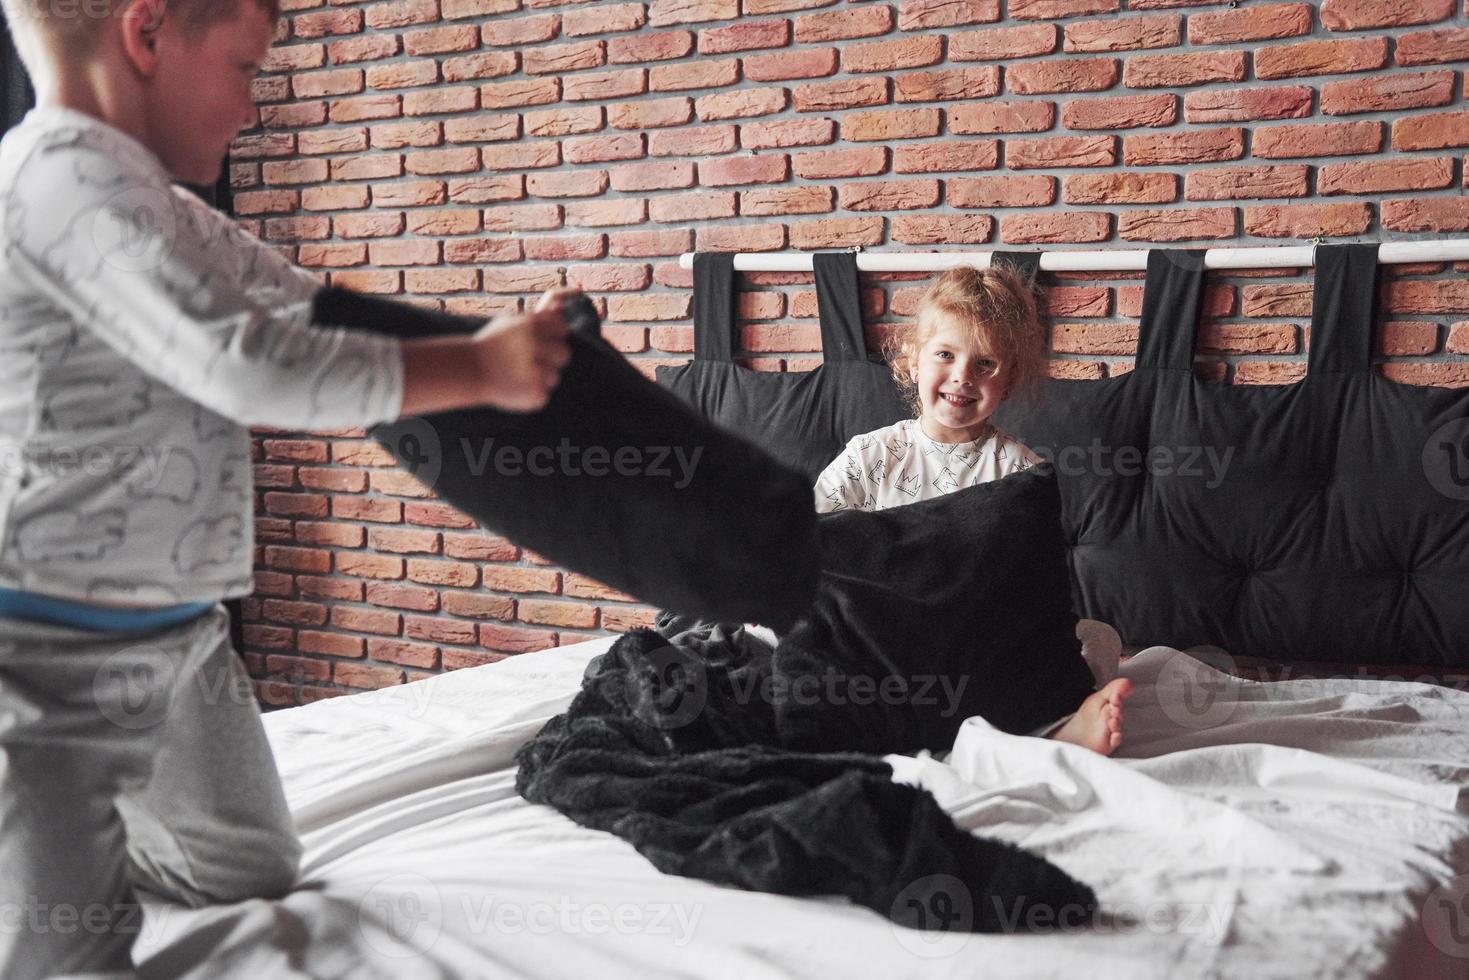 stygga barn liten pojke och flicka iscensatte en kudde slagsmål på sängen i sovrummet. de gillar den typen av spel foto